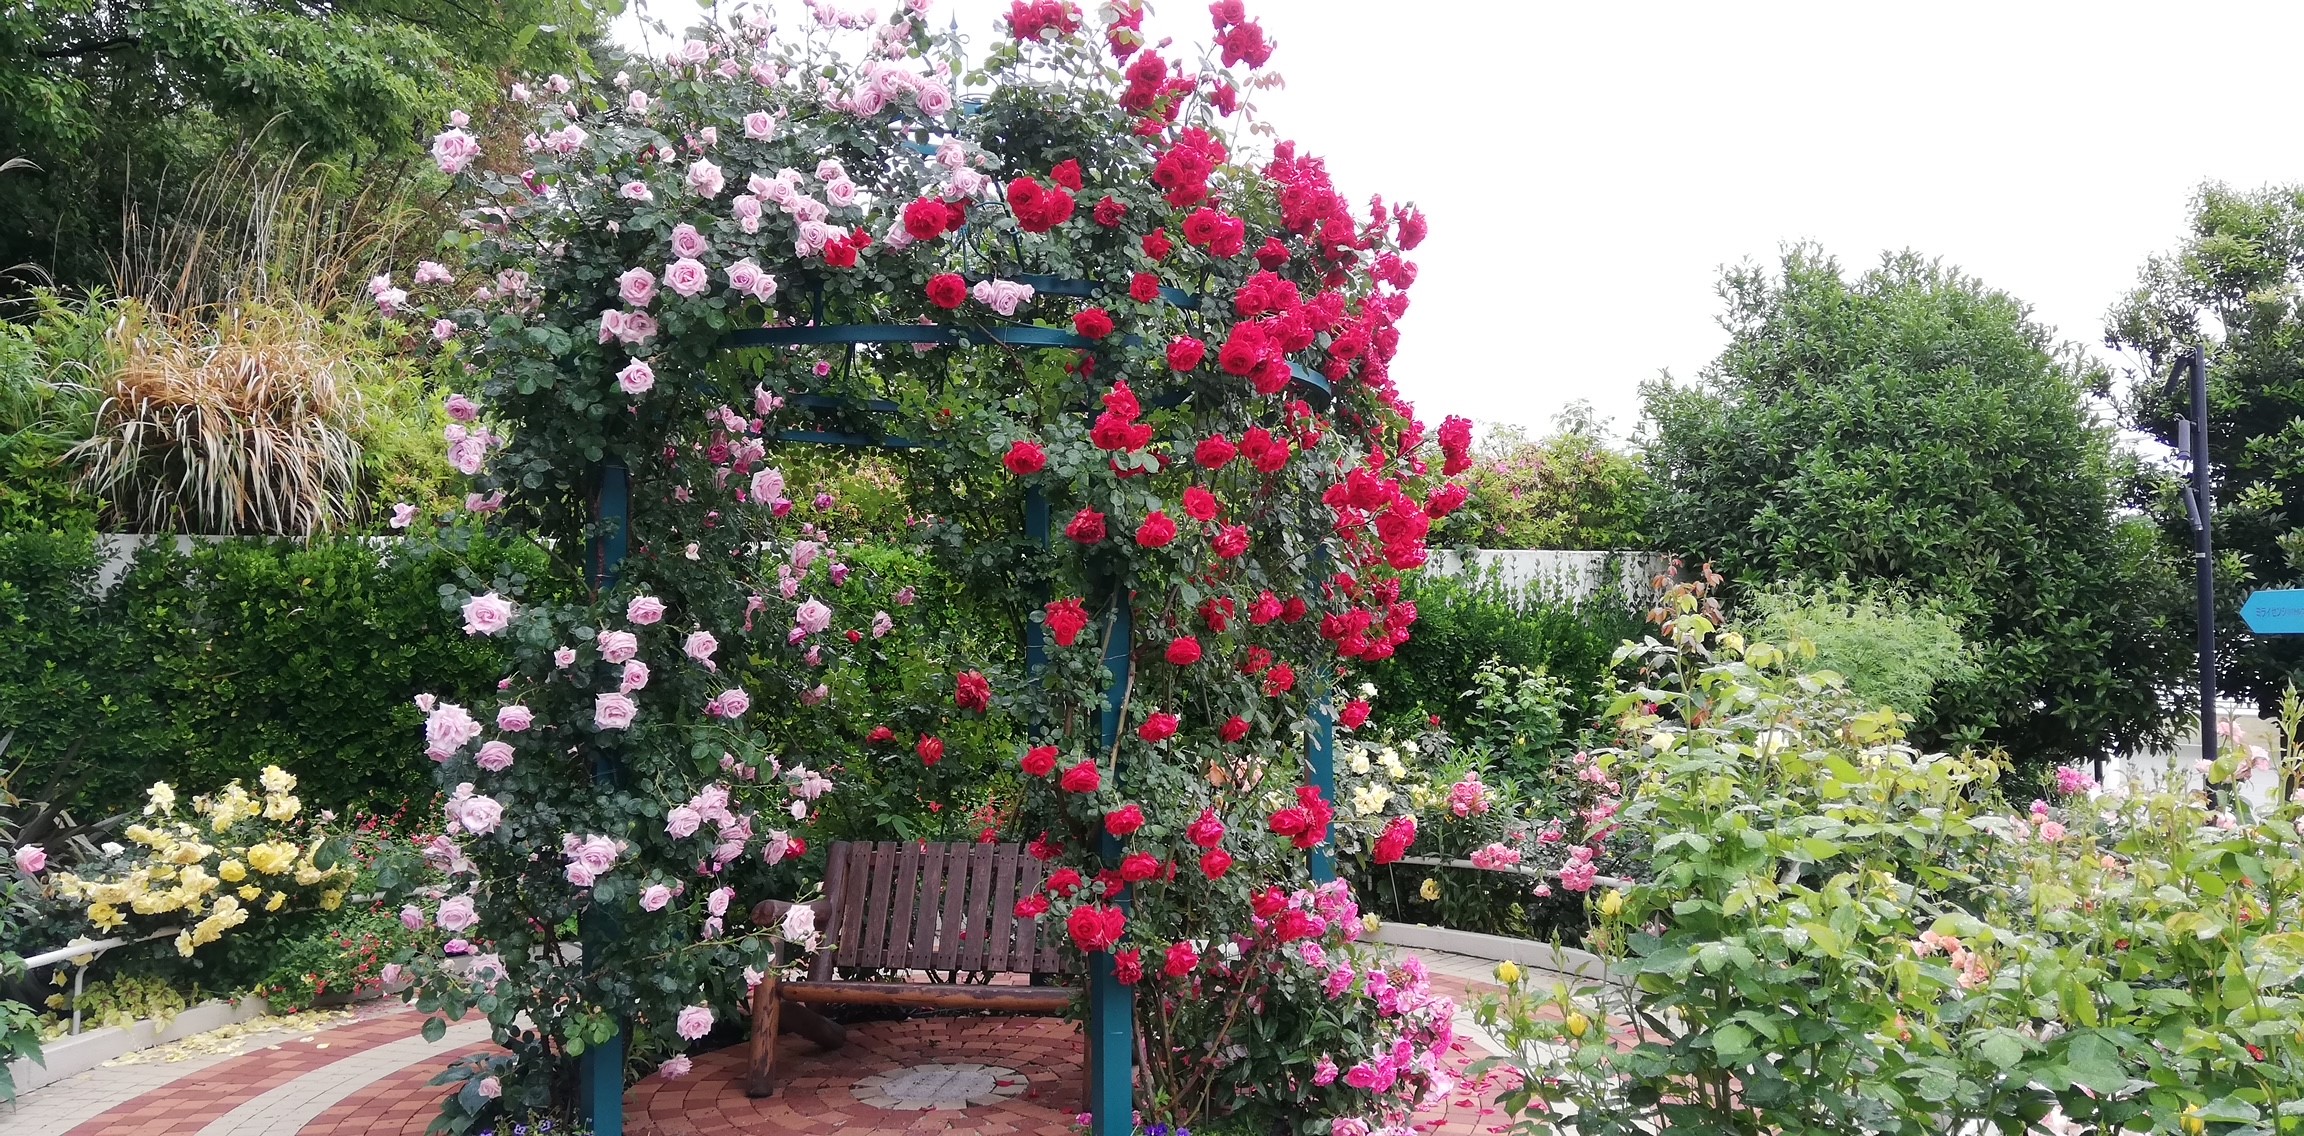 【ガゼボデッキ】 ベンチに座れば、360度バラの世界を独り占め。